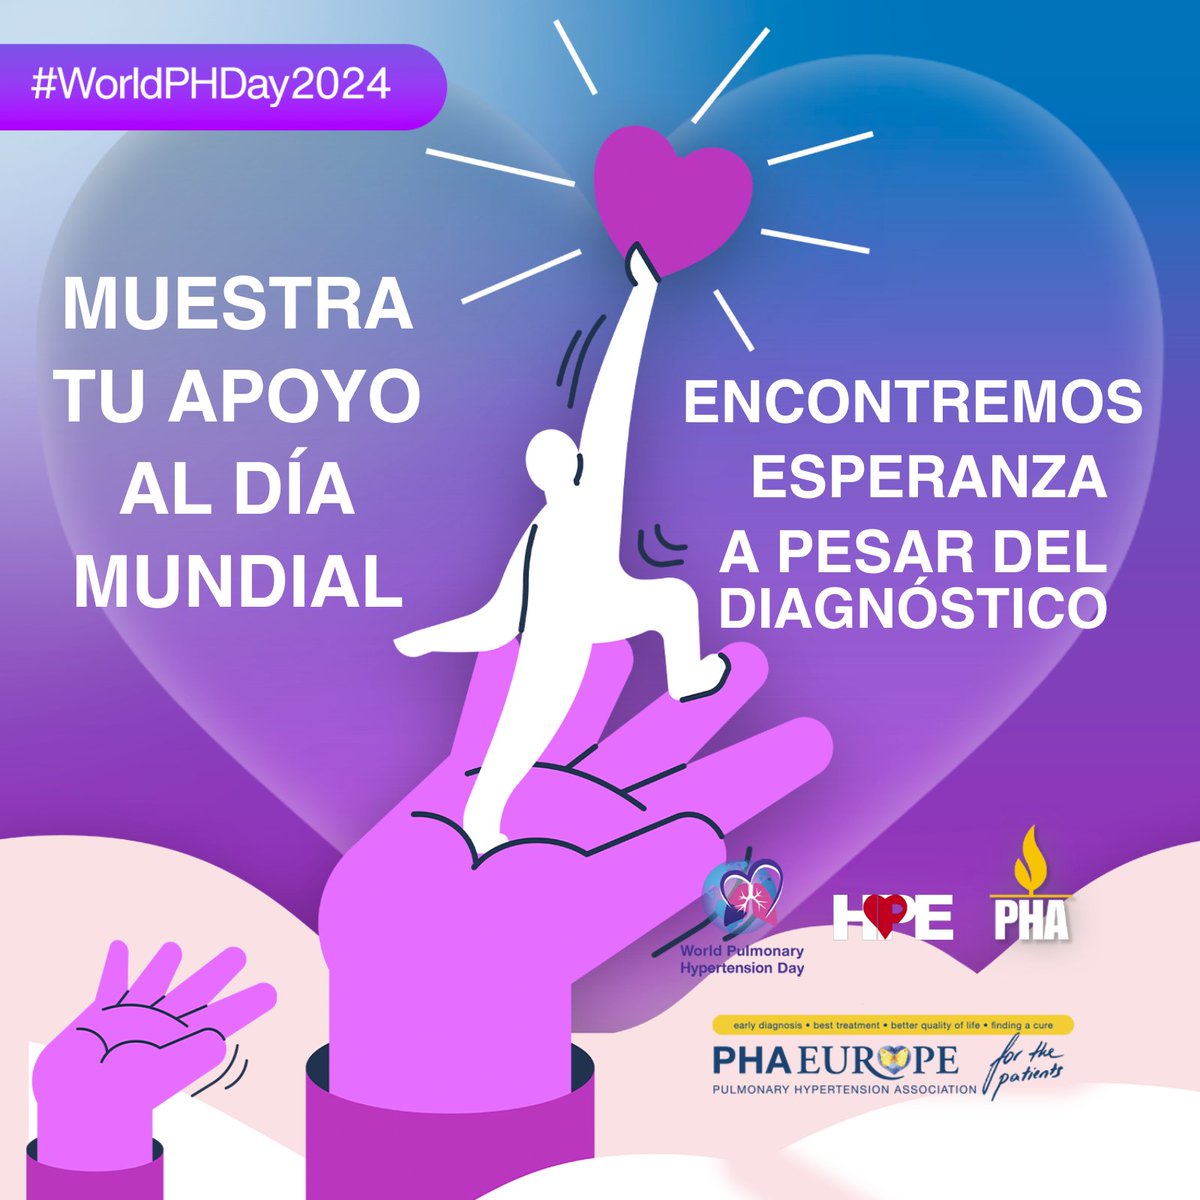 Únase a nosotros para mostrar su apoyo al Día Mundial de la Hipertensión Pulmonar. Juntos, ofrezcamos esperanza a las personas diagnosticadas con HP. 

worldphday.org

#WorldPHDay2024 #WeBreatheUnited #WPHD #HipertensiónPulmonar #hpe #PHAEurope